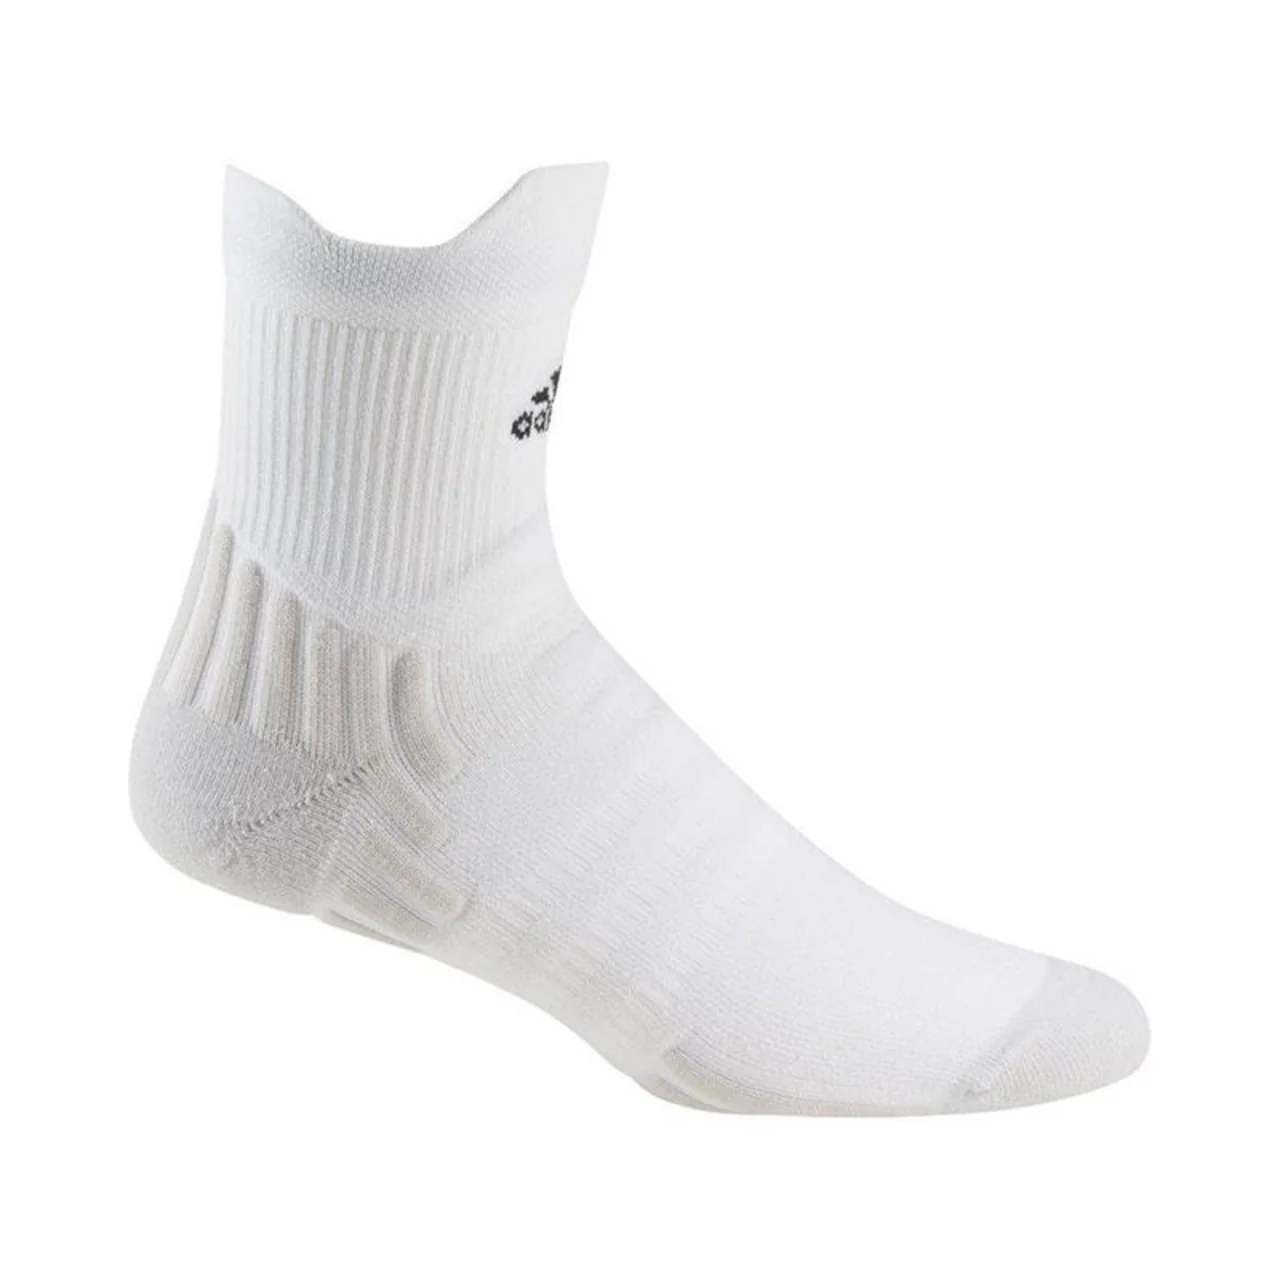 Adidas Quater Perf Socks Cushioned White